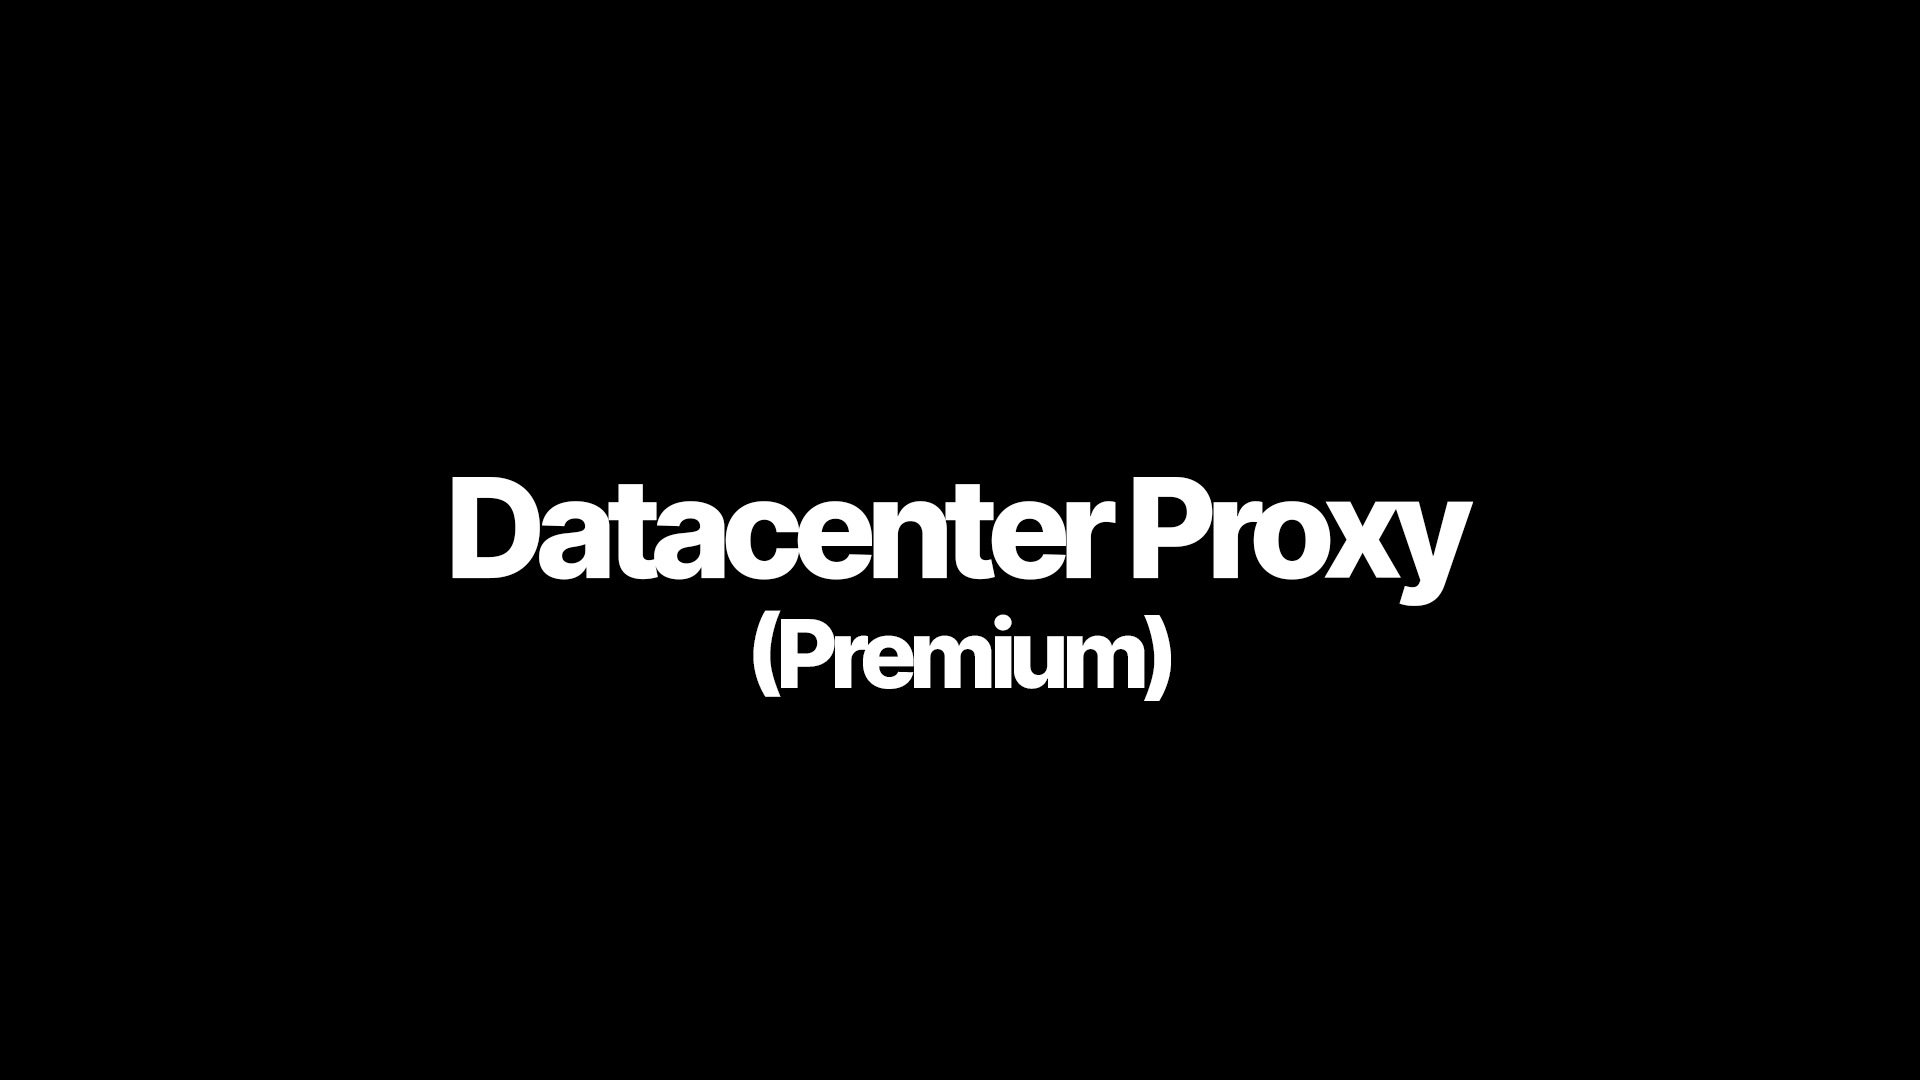 Datacenter Proxy (Premium)